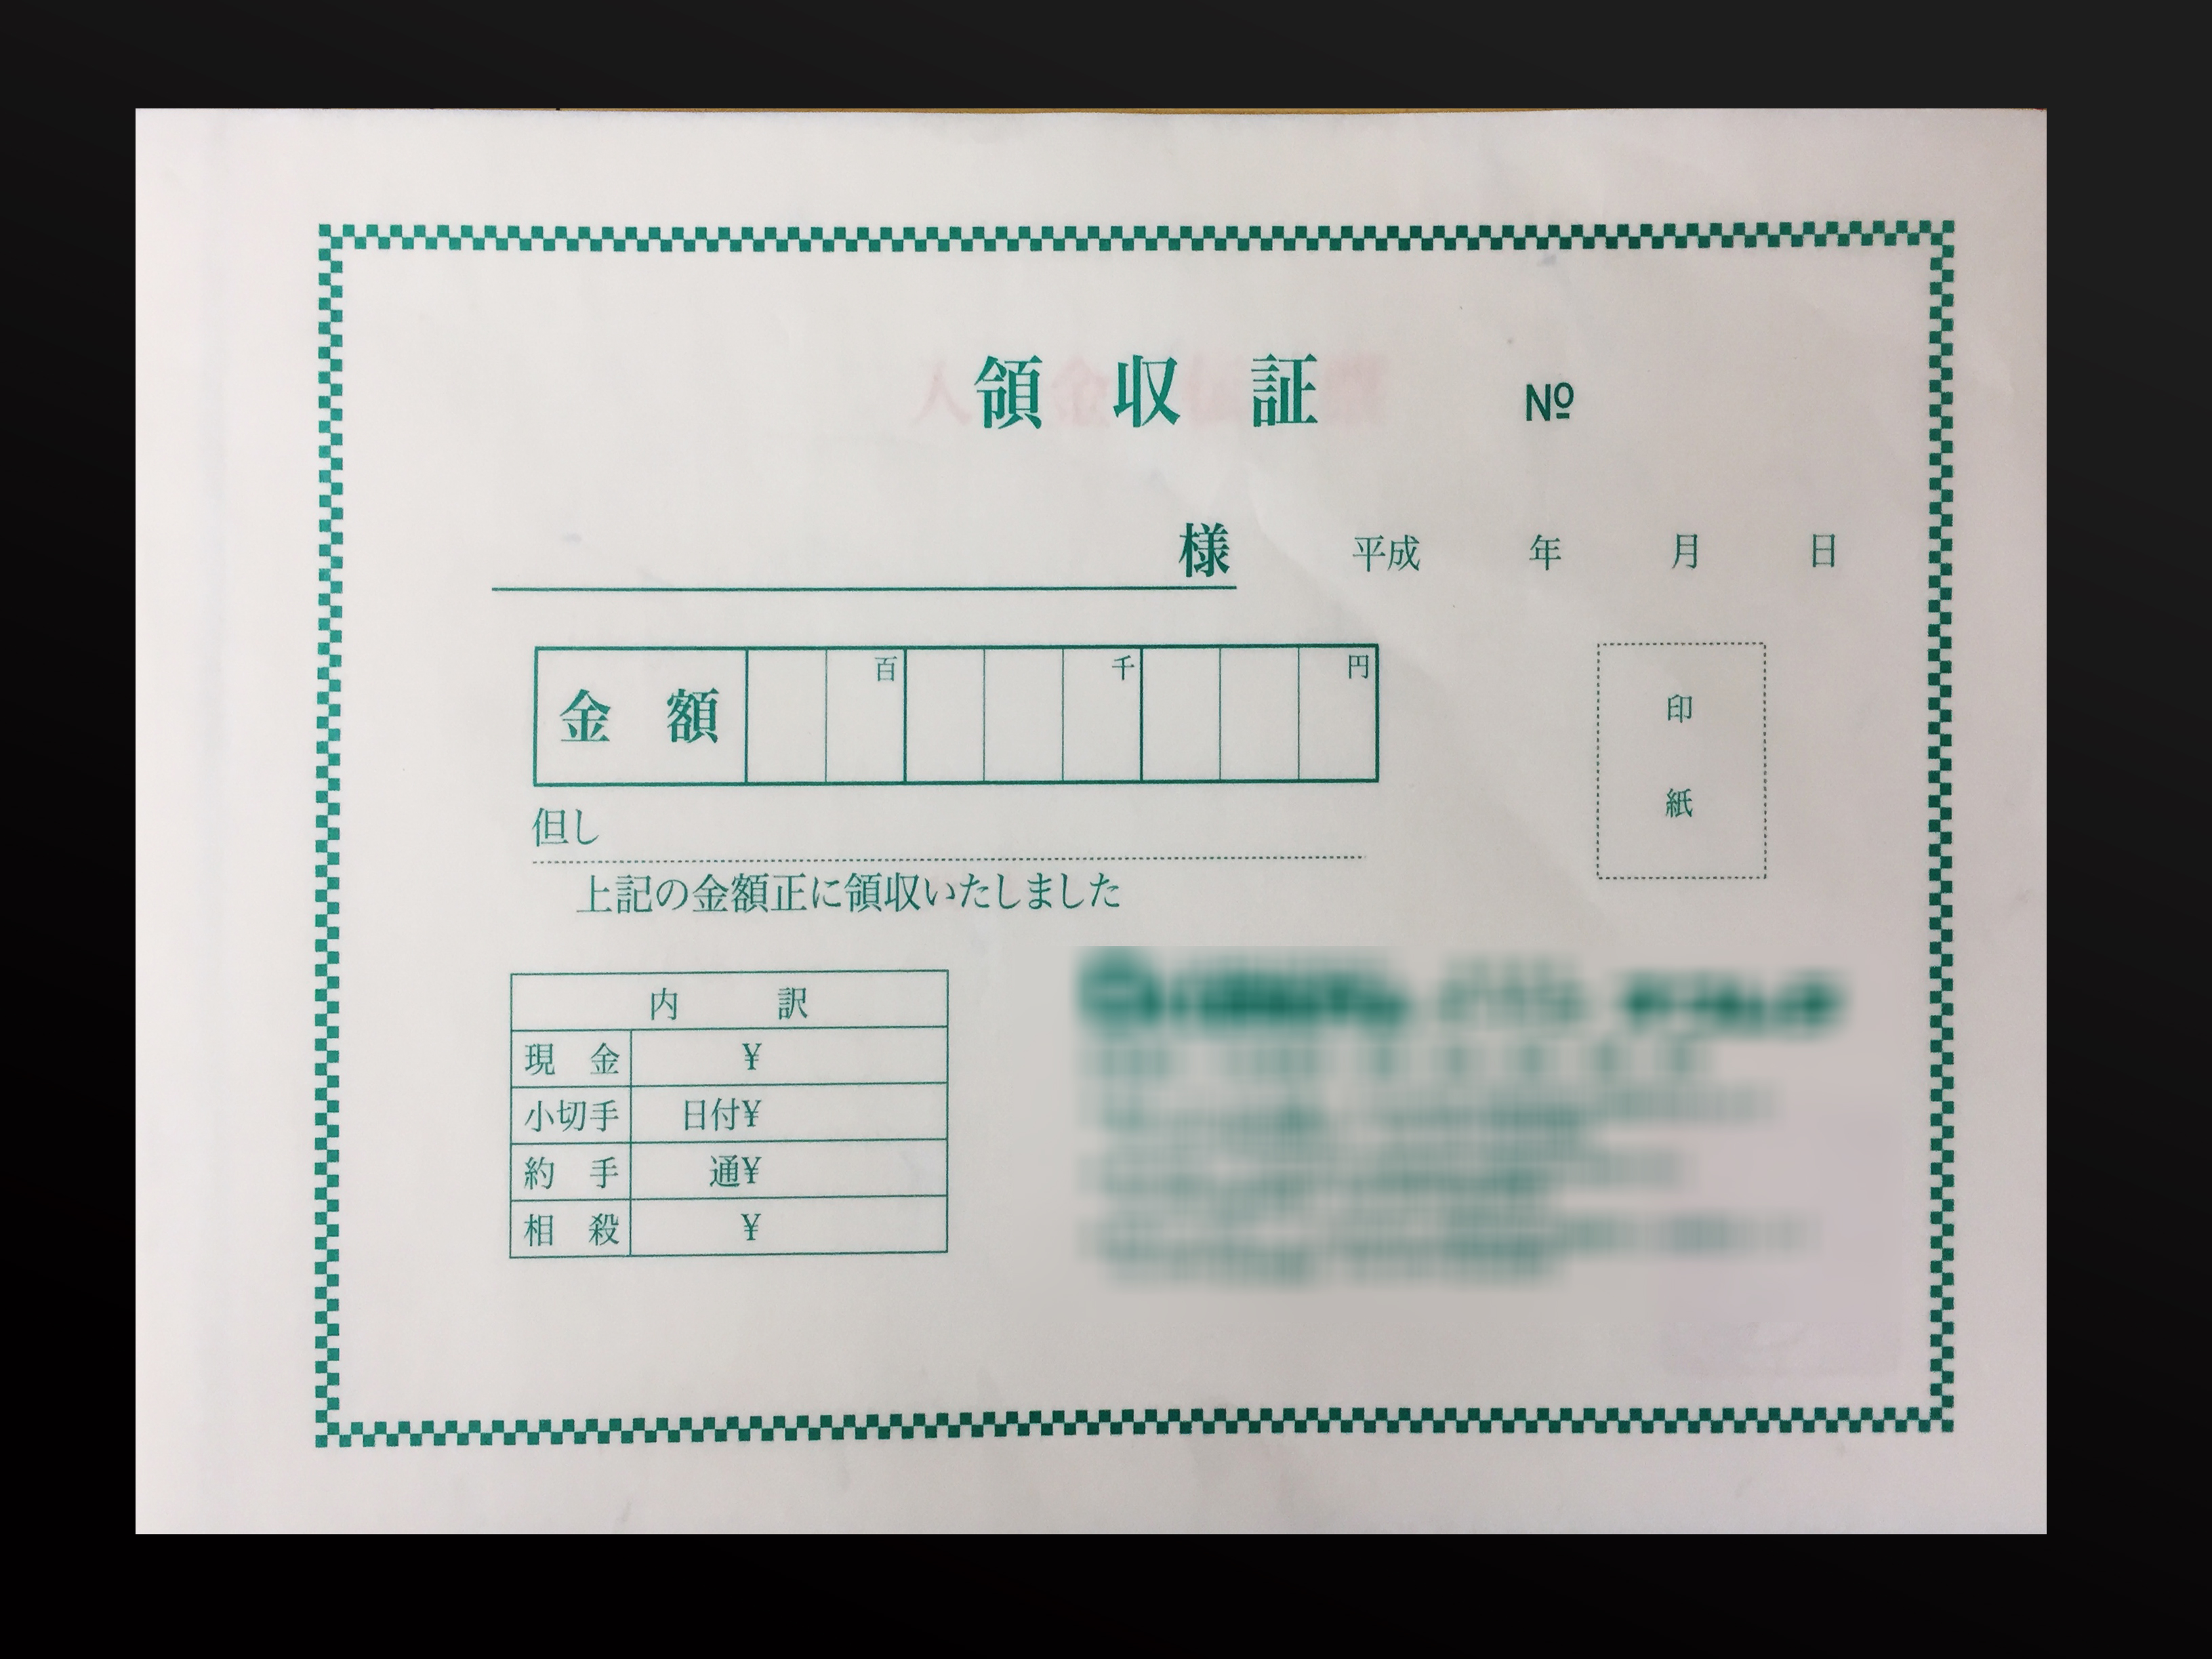 販売業で使用する領収書(3枚複写)の伝票作成実績